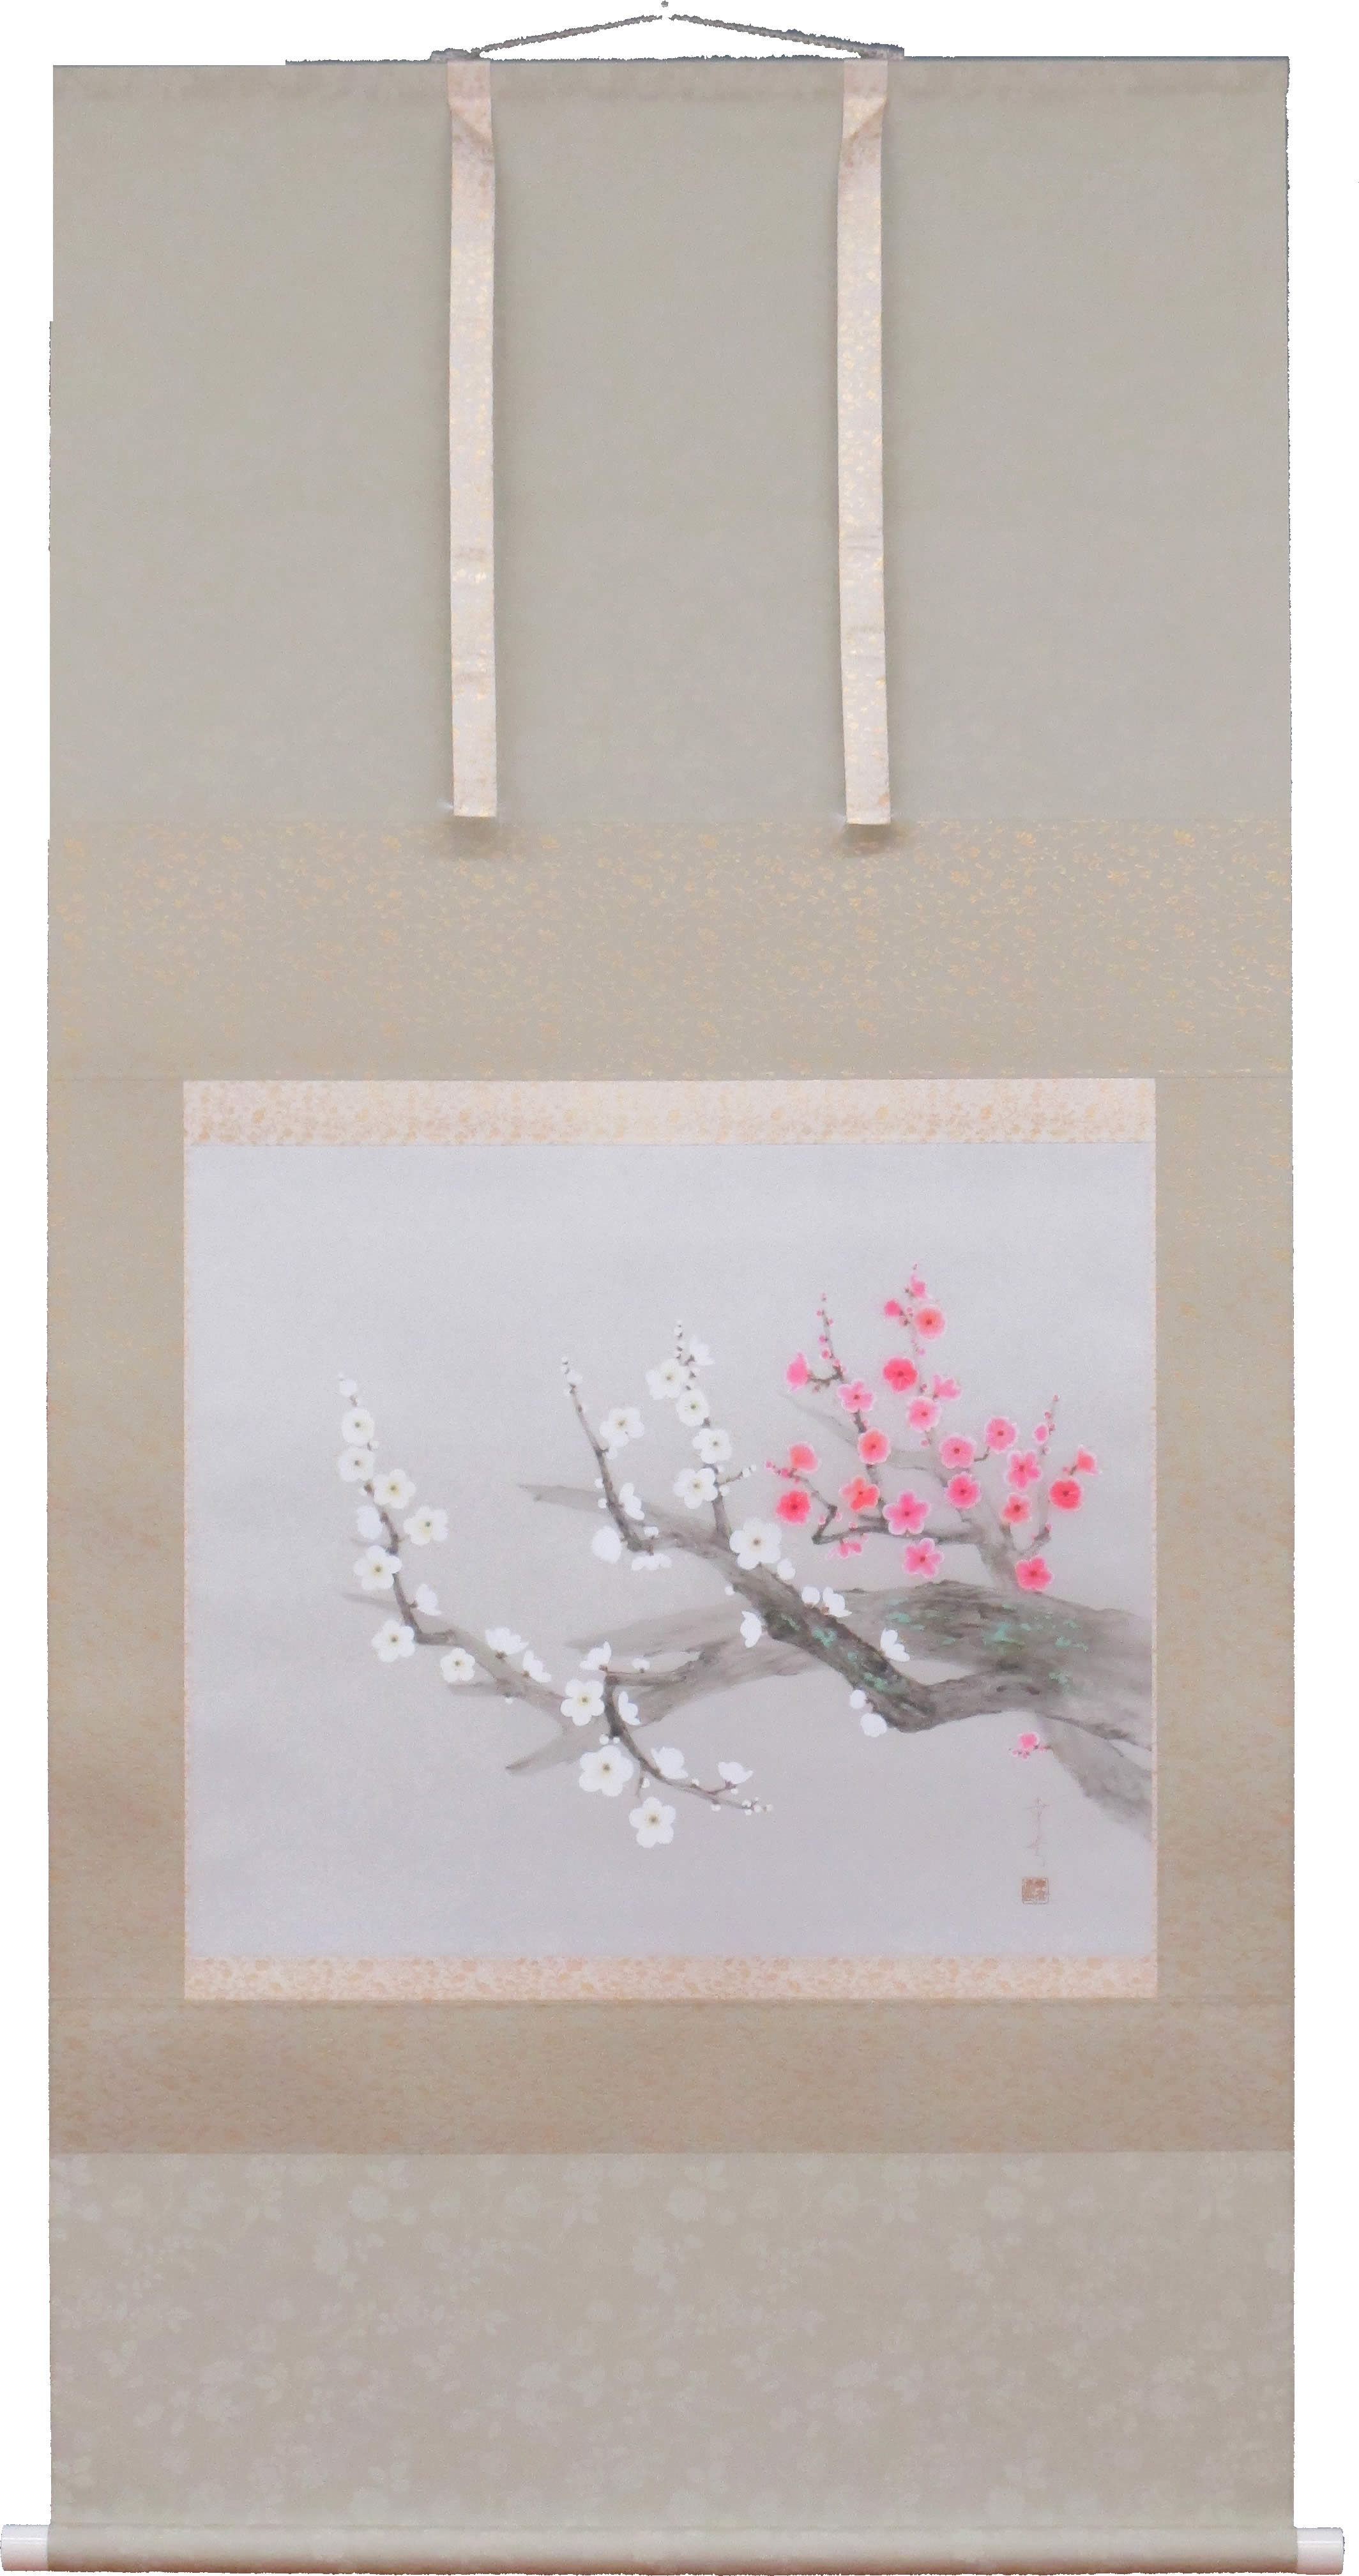 特注品◆ 中川幸彦 『 紅白梅 』 日本画掛け軸 送料無料 掛軸